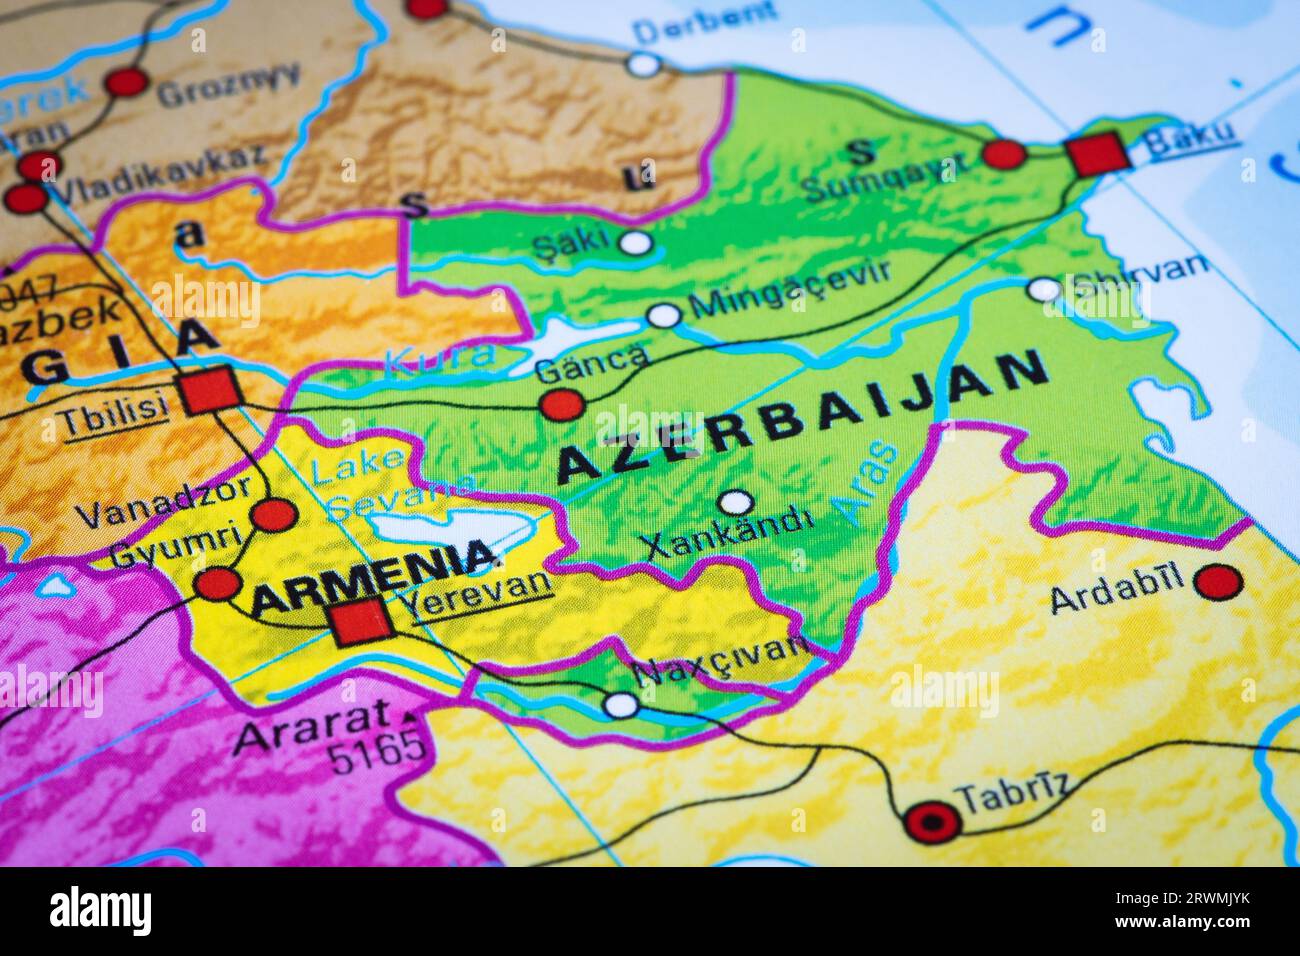 Karte oder Kartographie von Armenien und Aserbaidschan mit den Hauptstädten Baku und Jerewan, Republik Artsakh und Berg-Karabach, Georgien und Kaspisches Meer Stockfoto